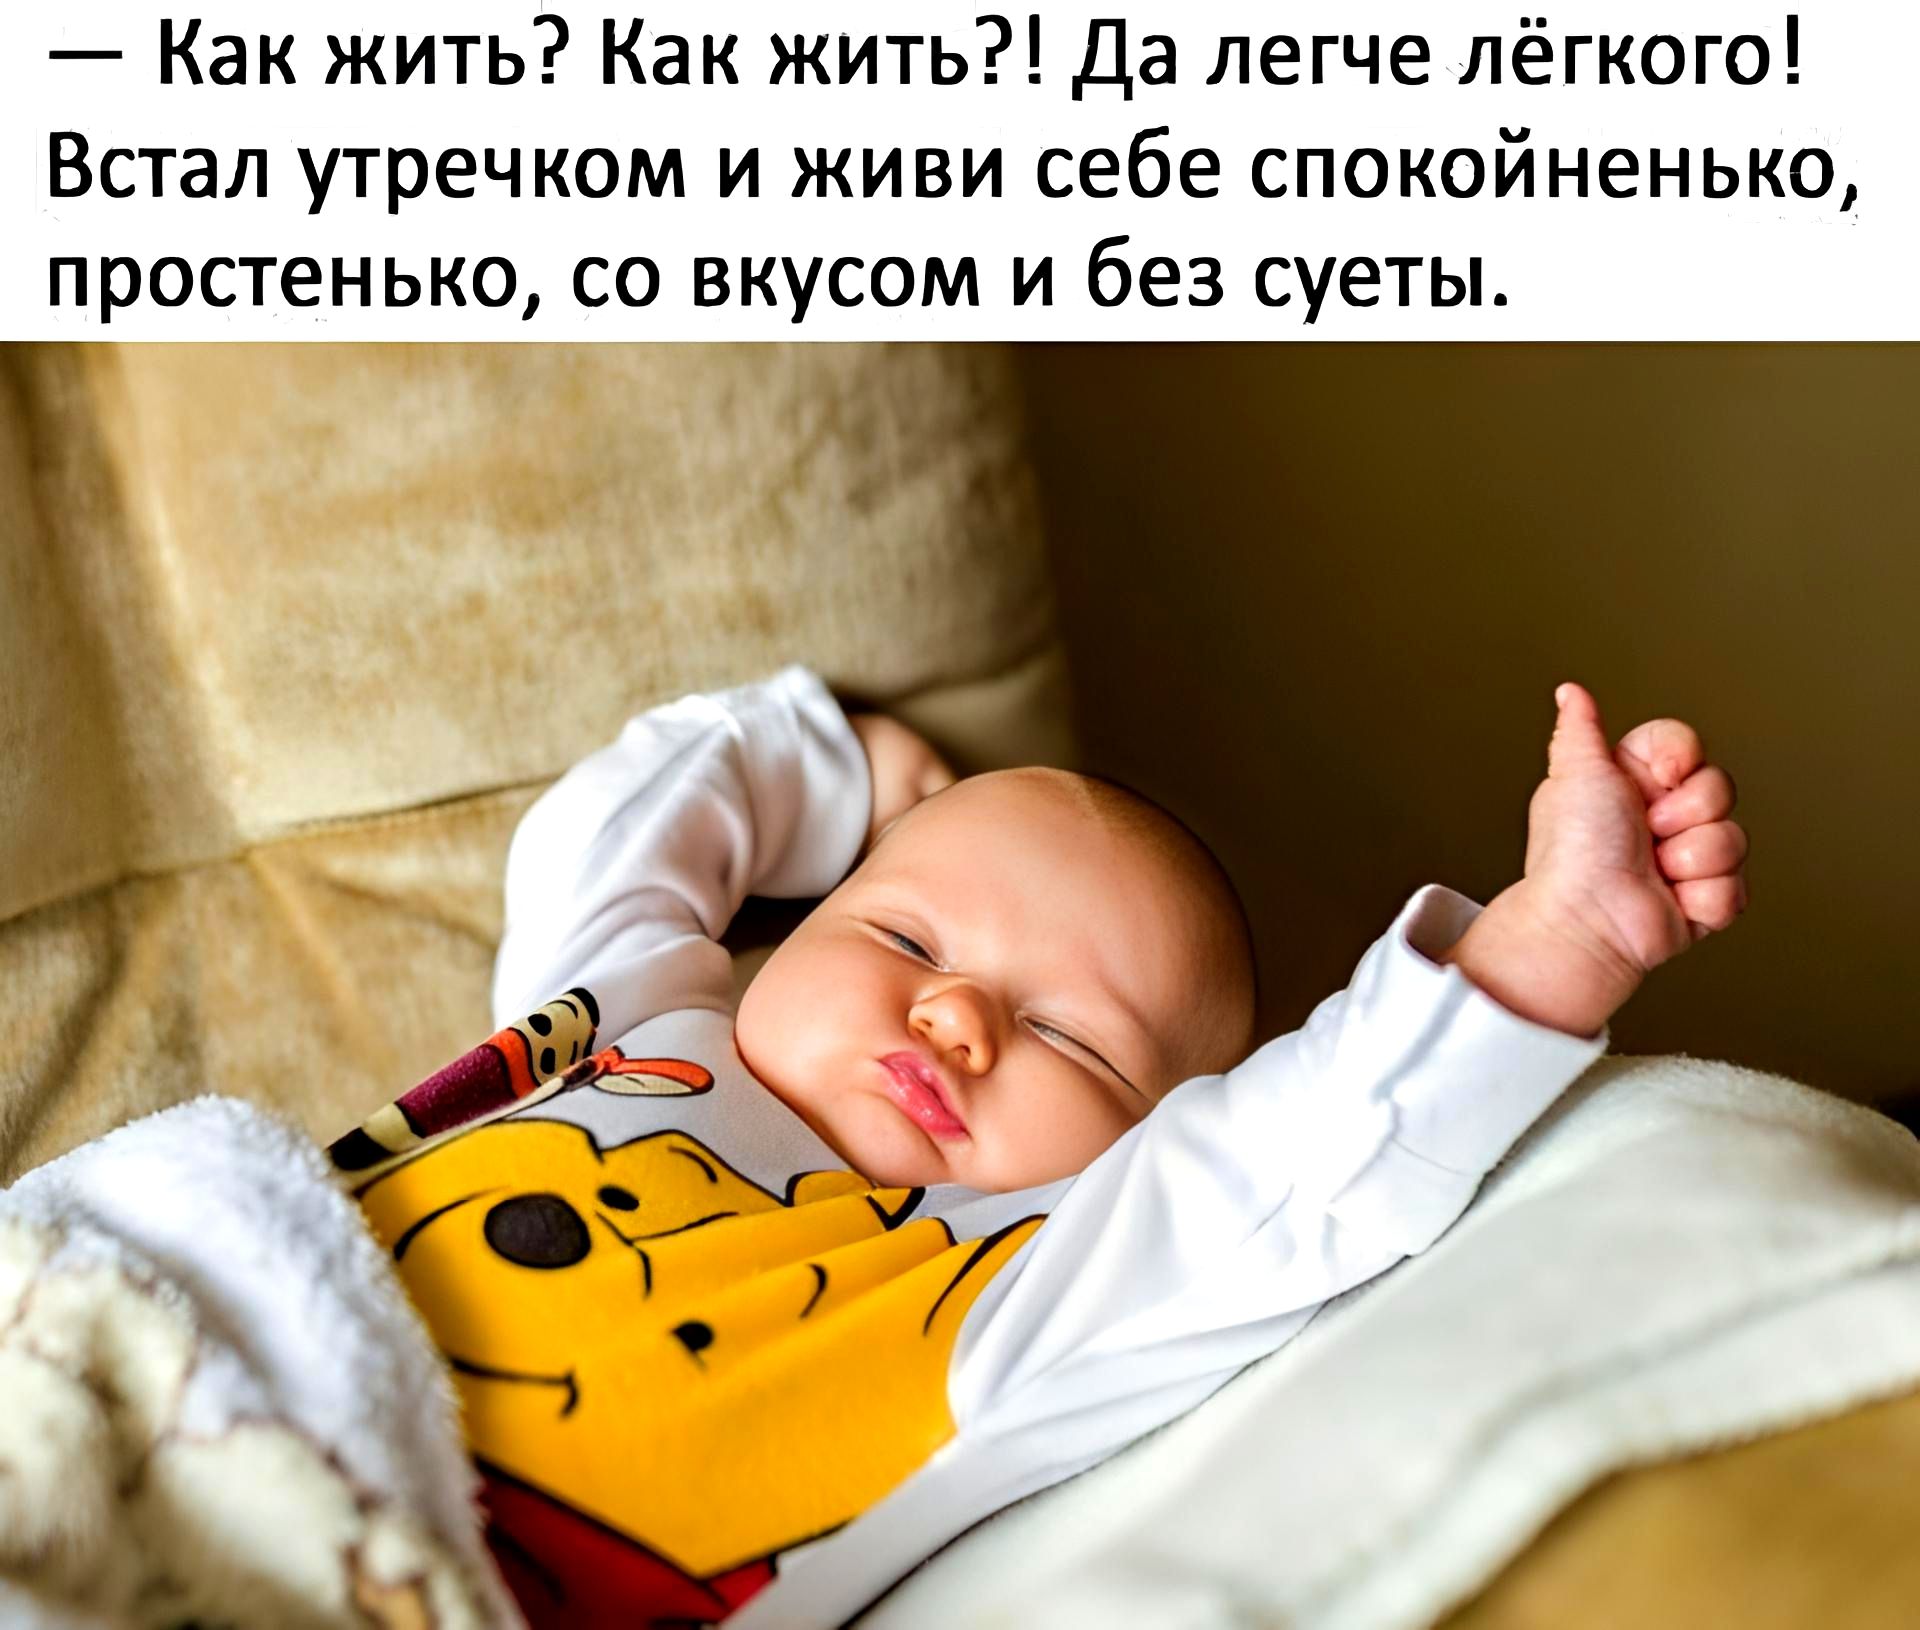 Ребенку 6 месяцев часто просыпается